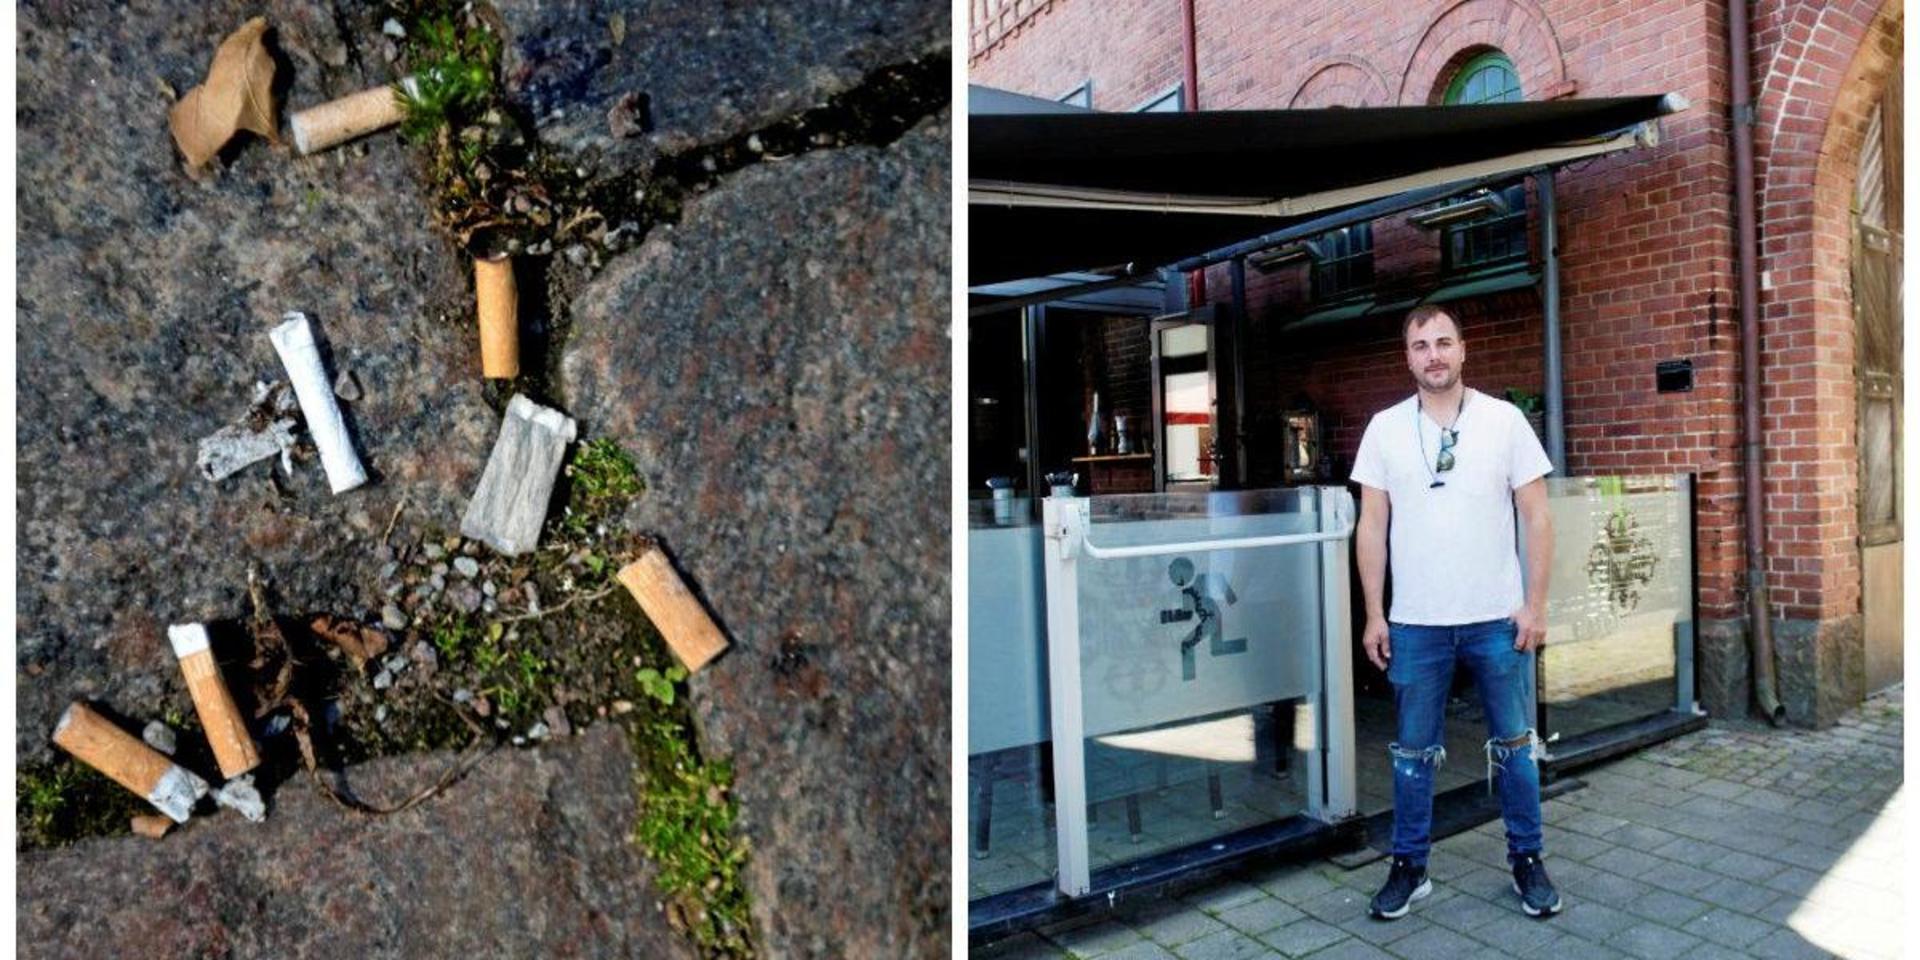 Antalet fimpar som slängs har blivit fler, sedan rökförbudet infördes. 